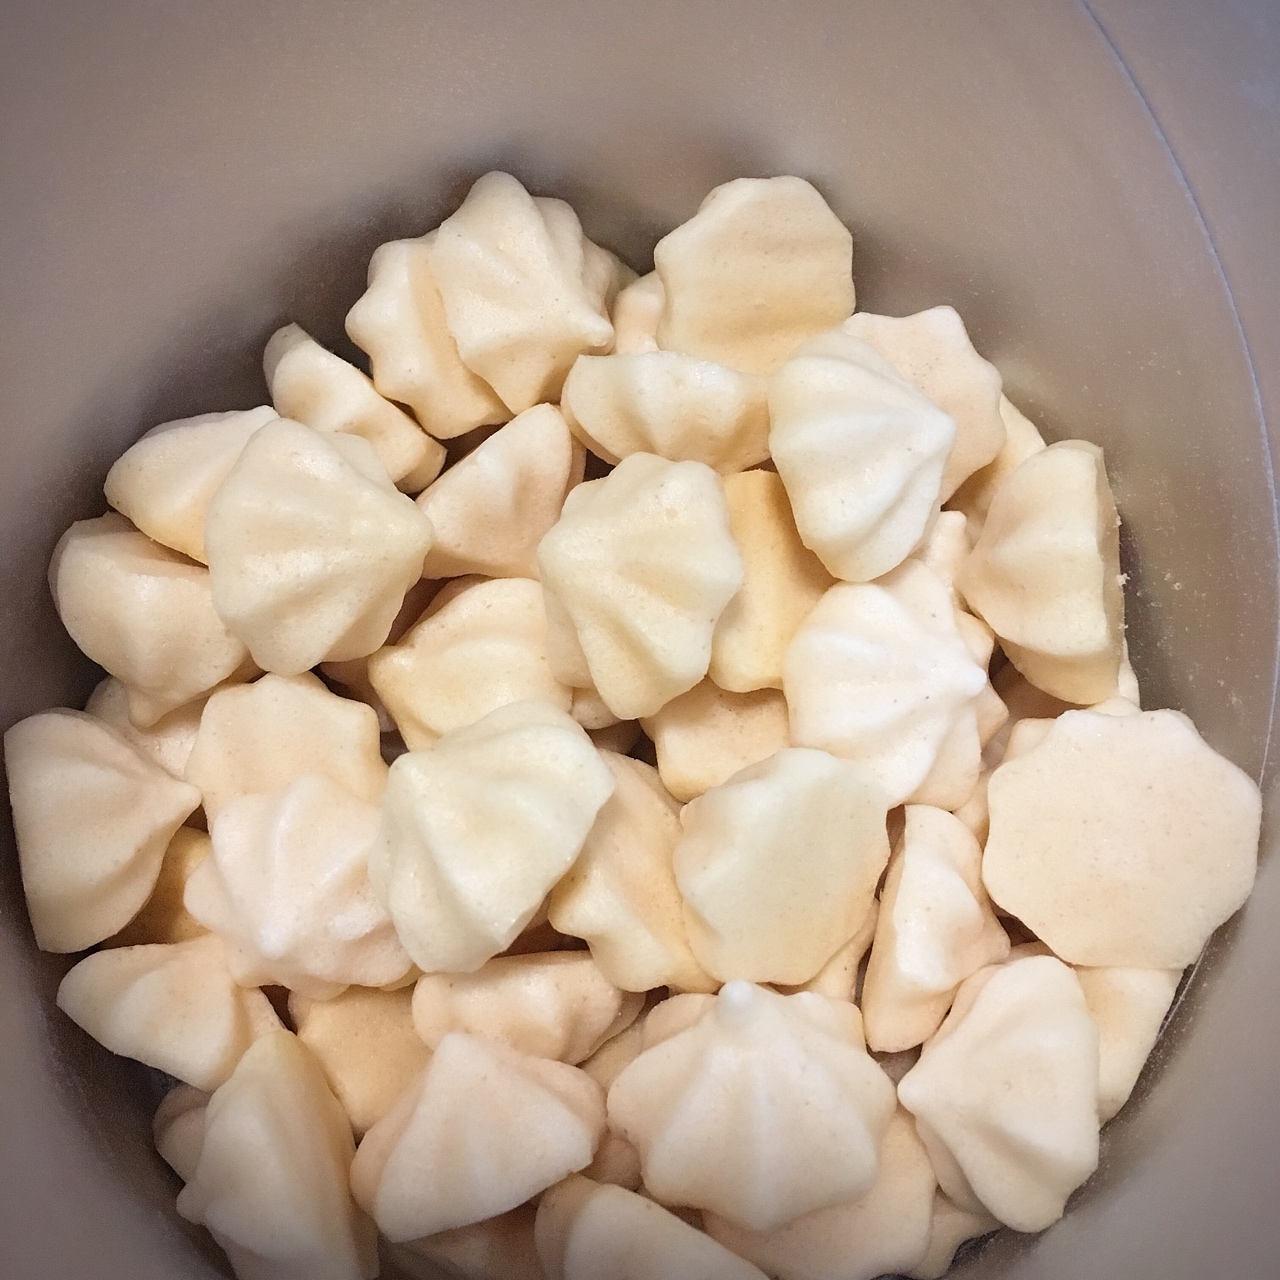 这是一个酸奶溶豆的学习分享小记